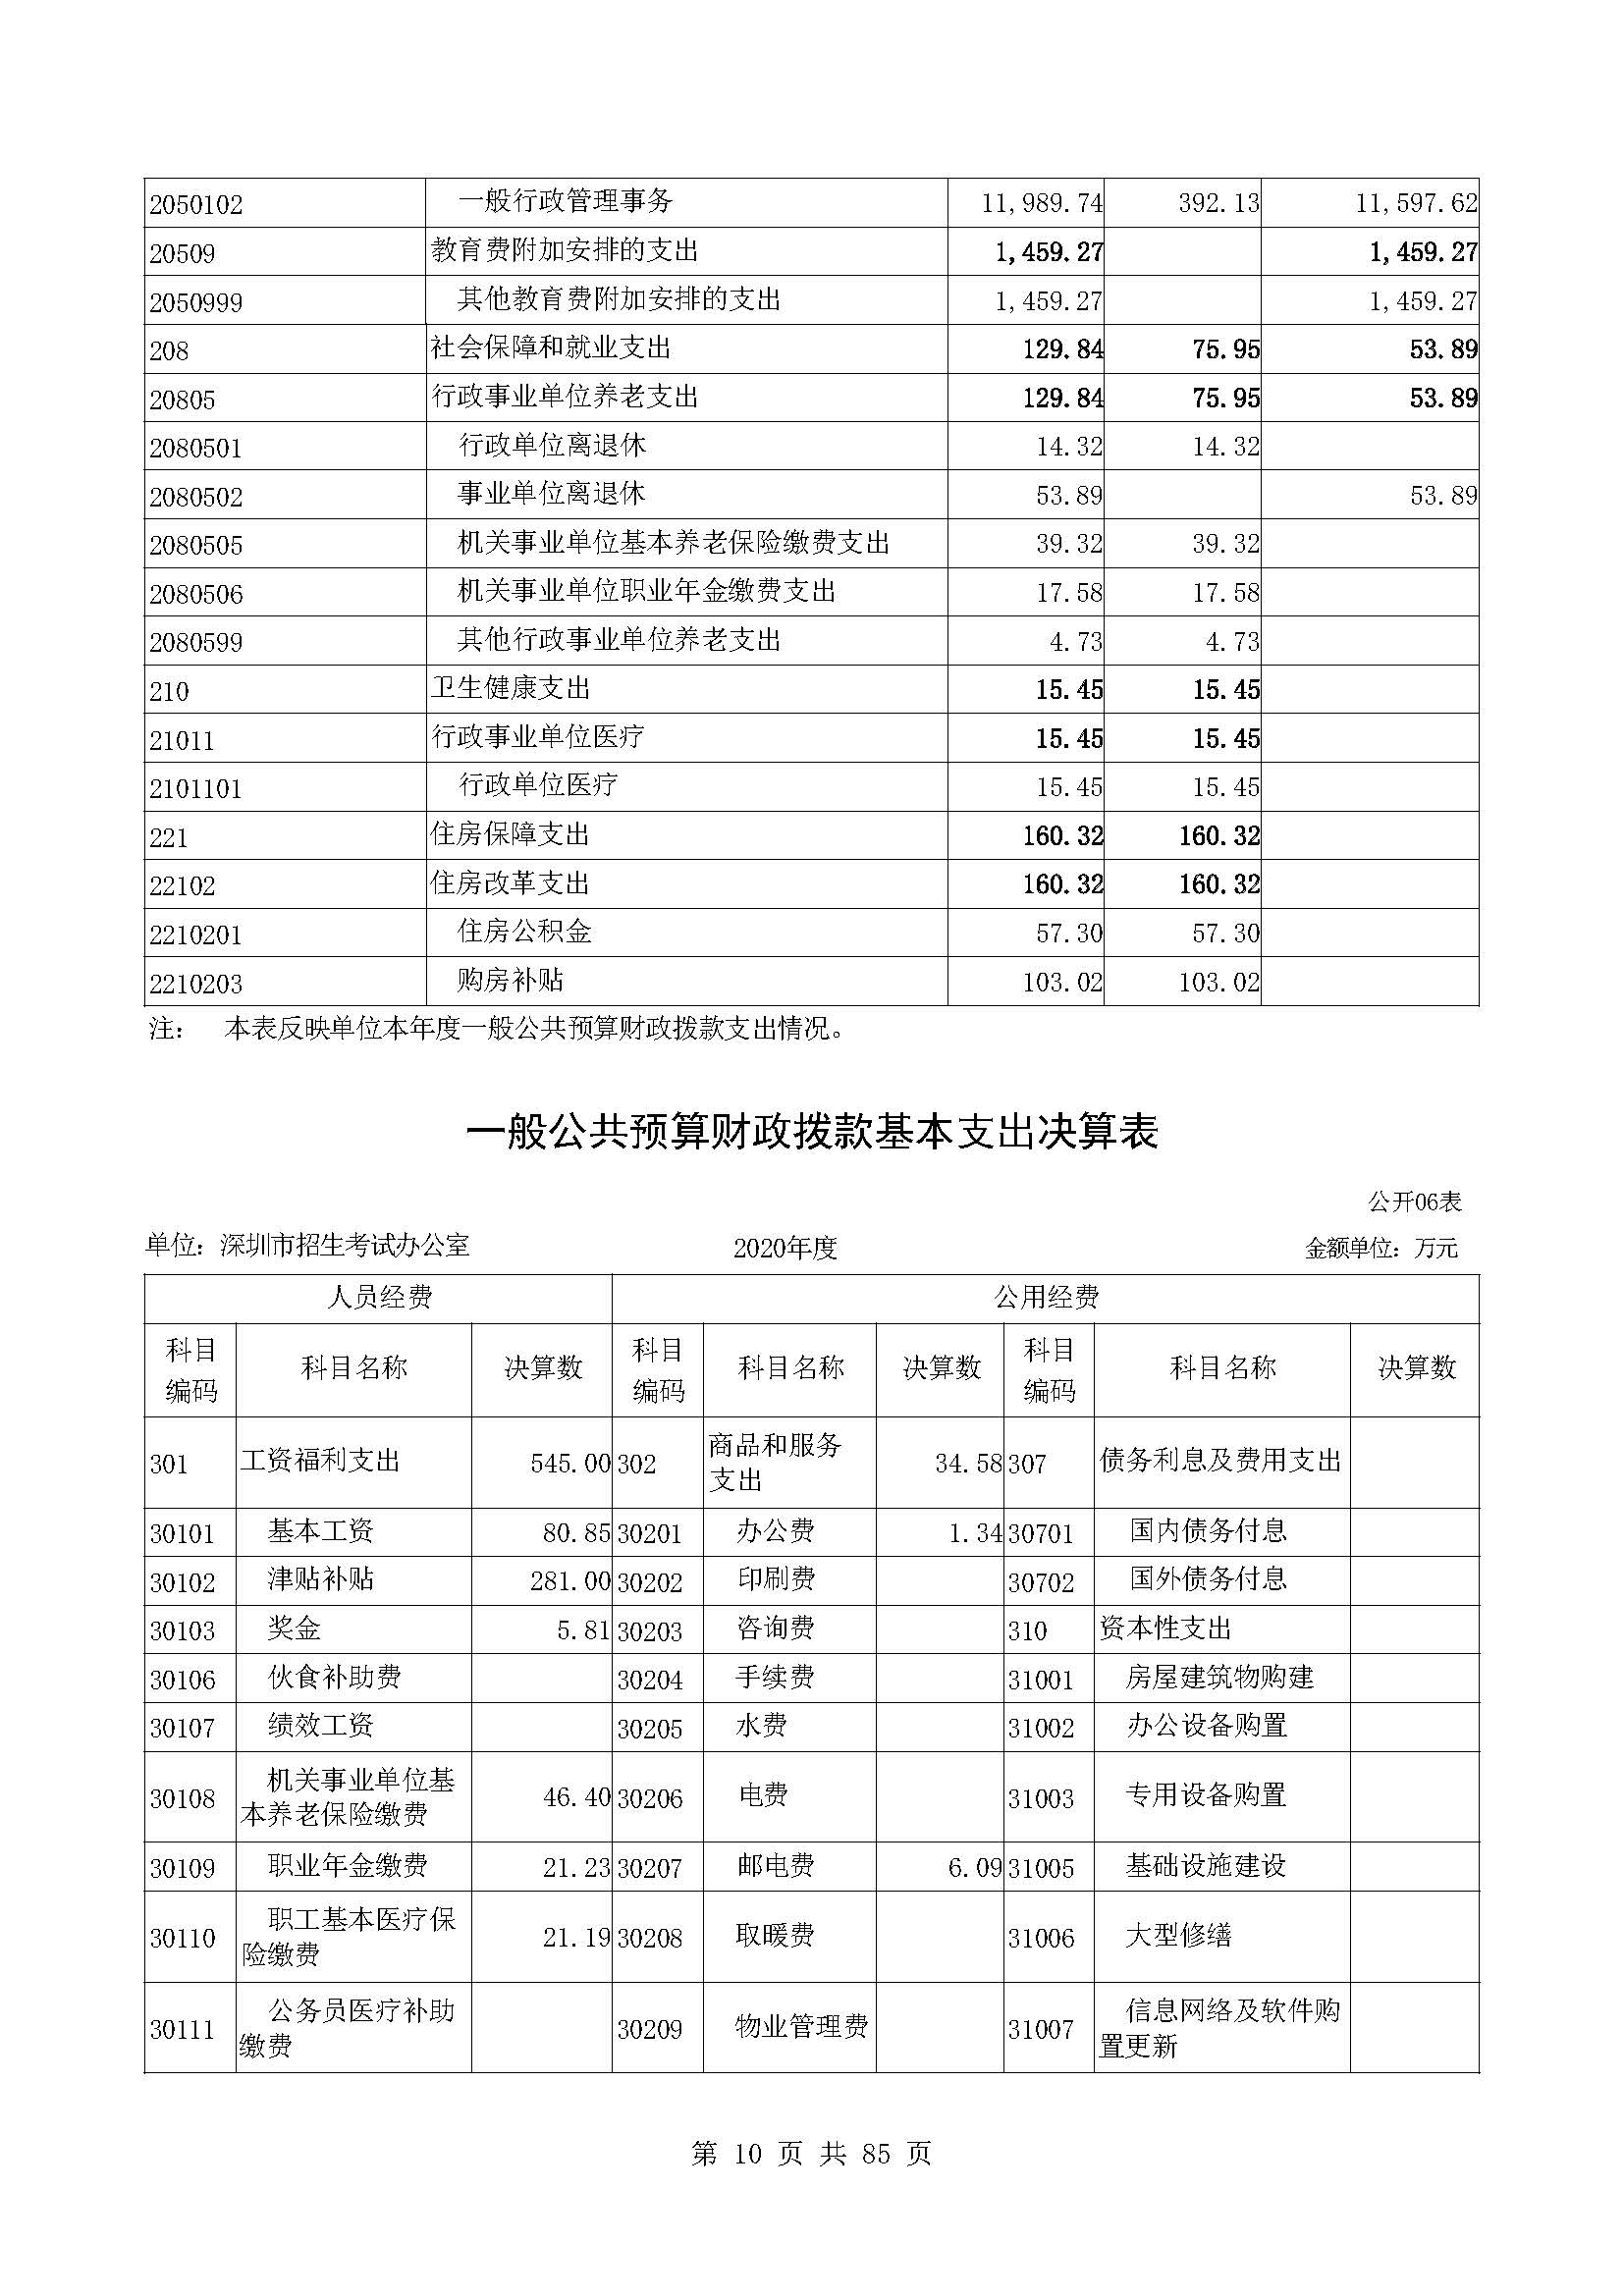 深圳市招生考试办公室2020年度部门决算_页面_11.jpg